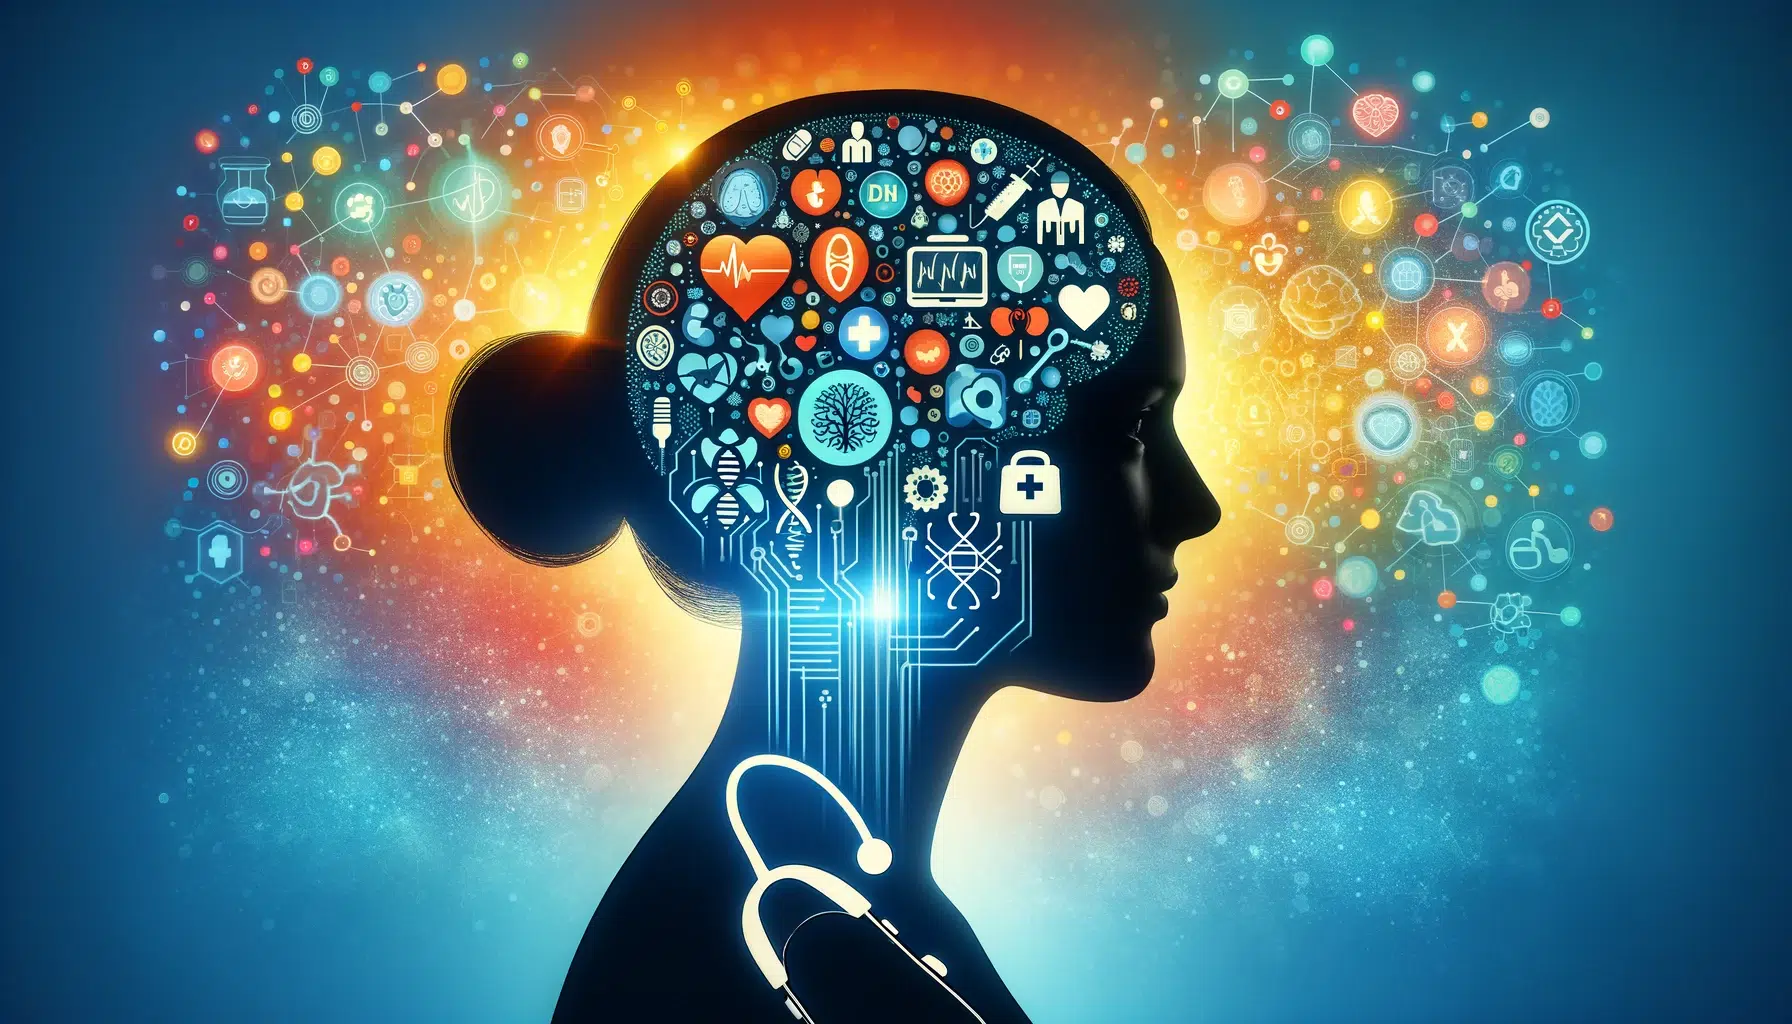 Silhouette d'un profil humain intégrant un circuit imprimé, avec un éclat de symboles médicaux et scientifiques colorés émanant de la tête, sur un fond dégradé bleu-orange.